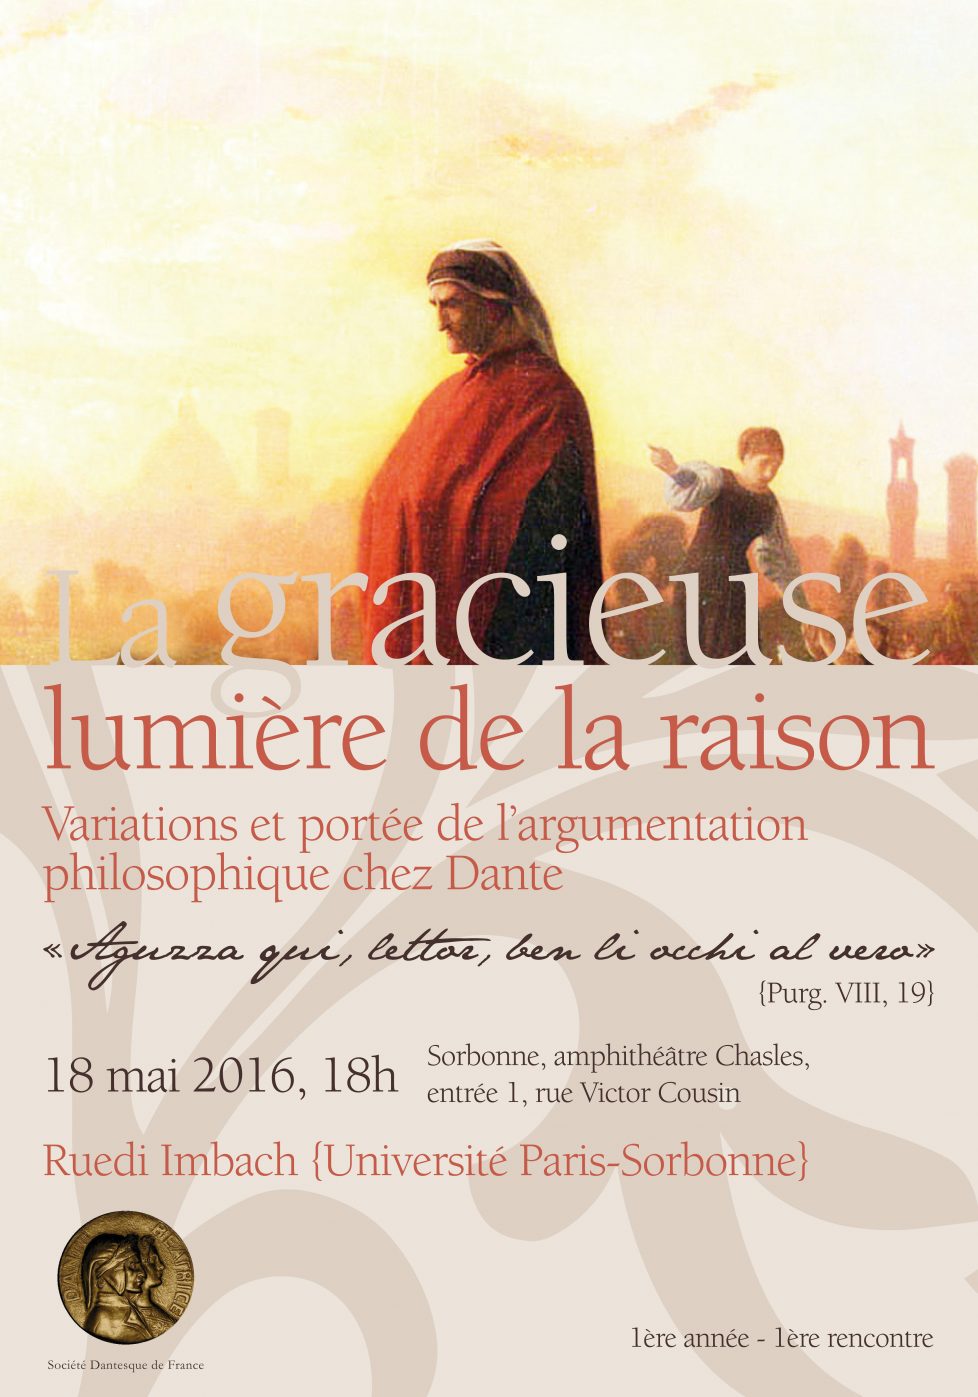 Première séance de la Société Dantesque de France: Ruedi Imbach, la gracieuse lumière de la raison